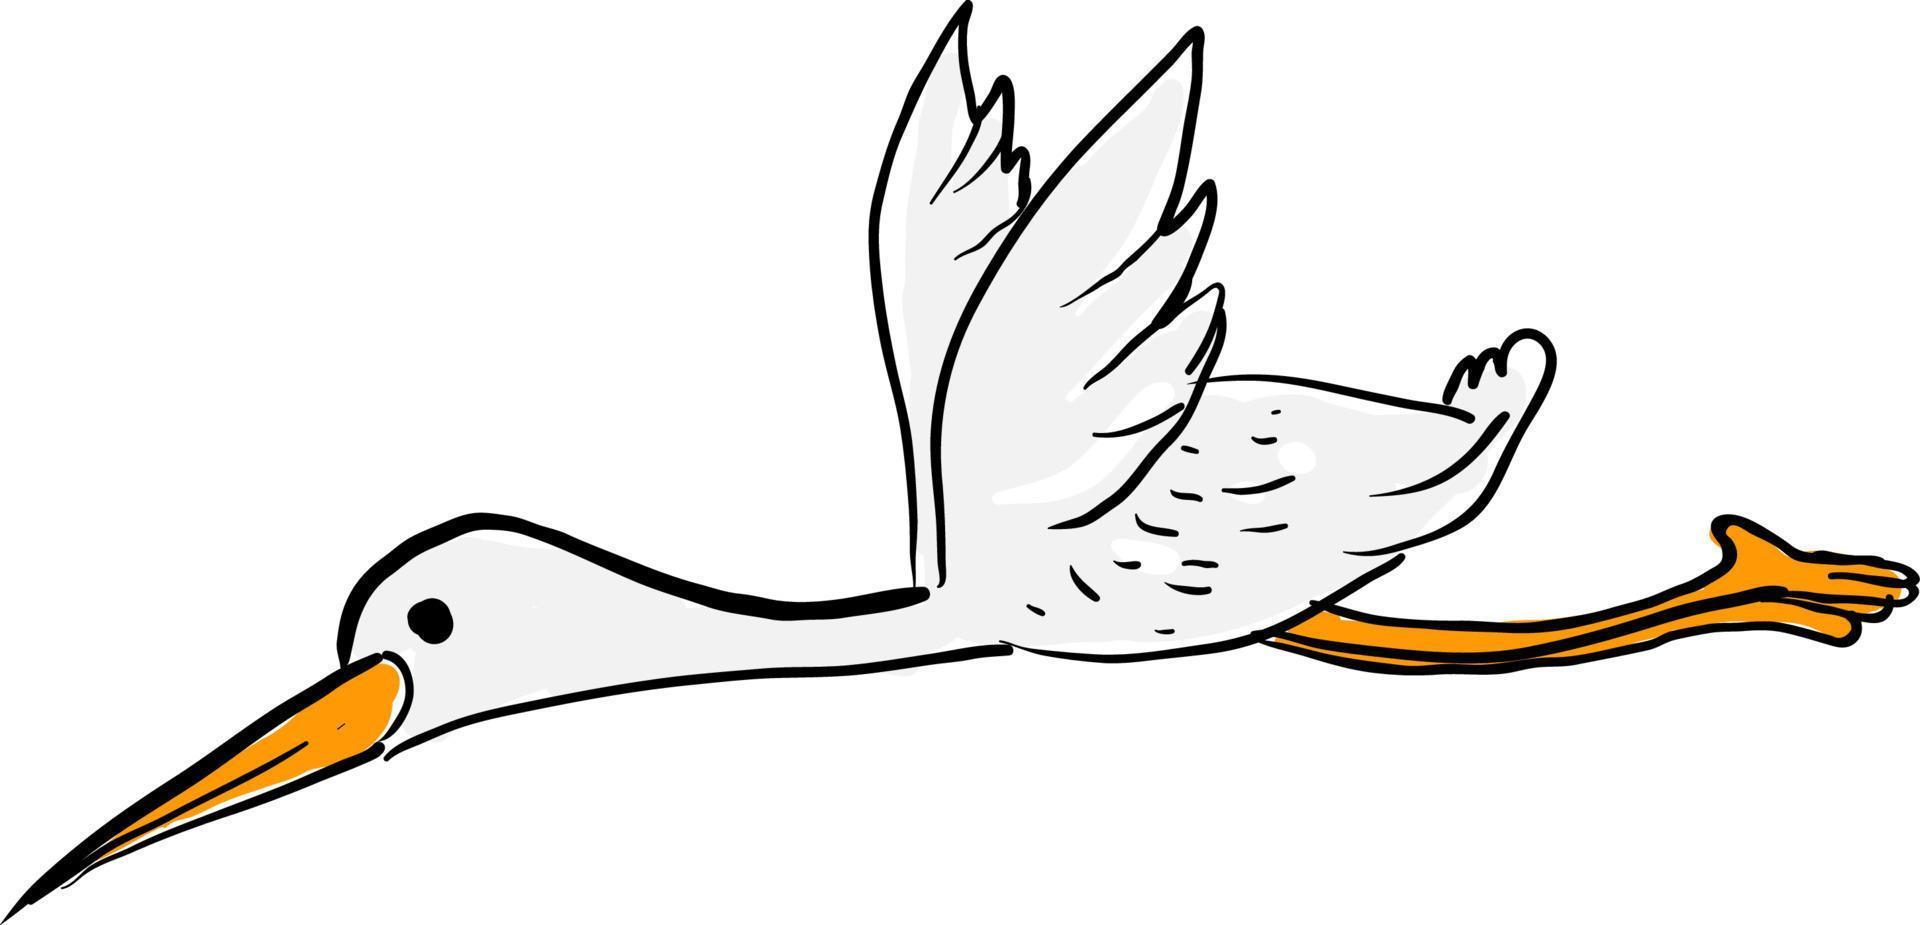 Flying stork, illustration, vector on white background.